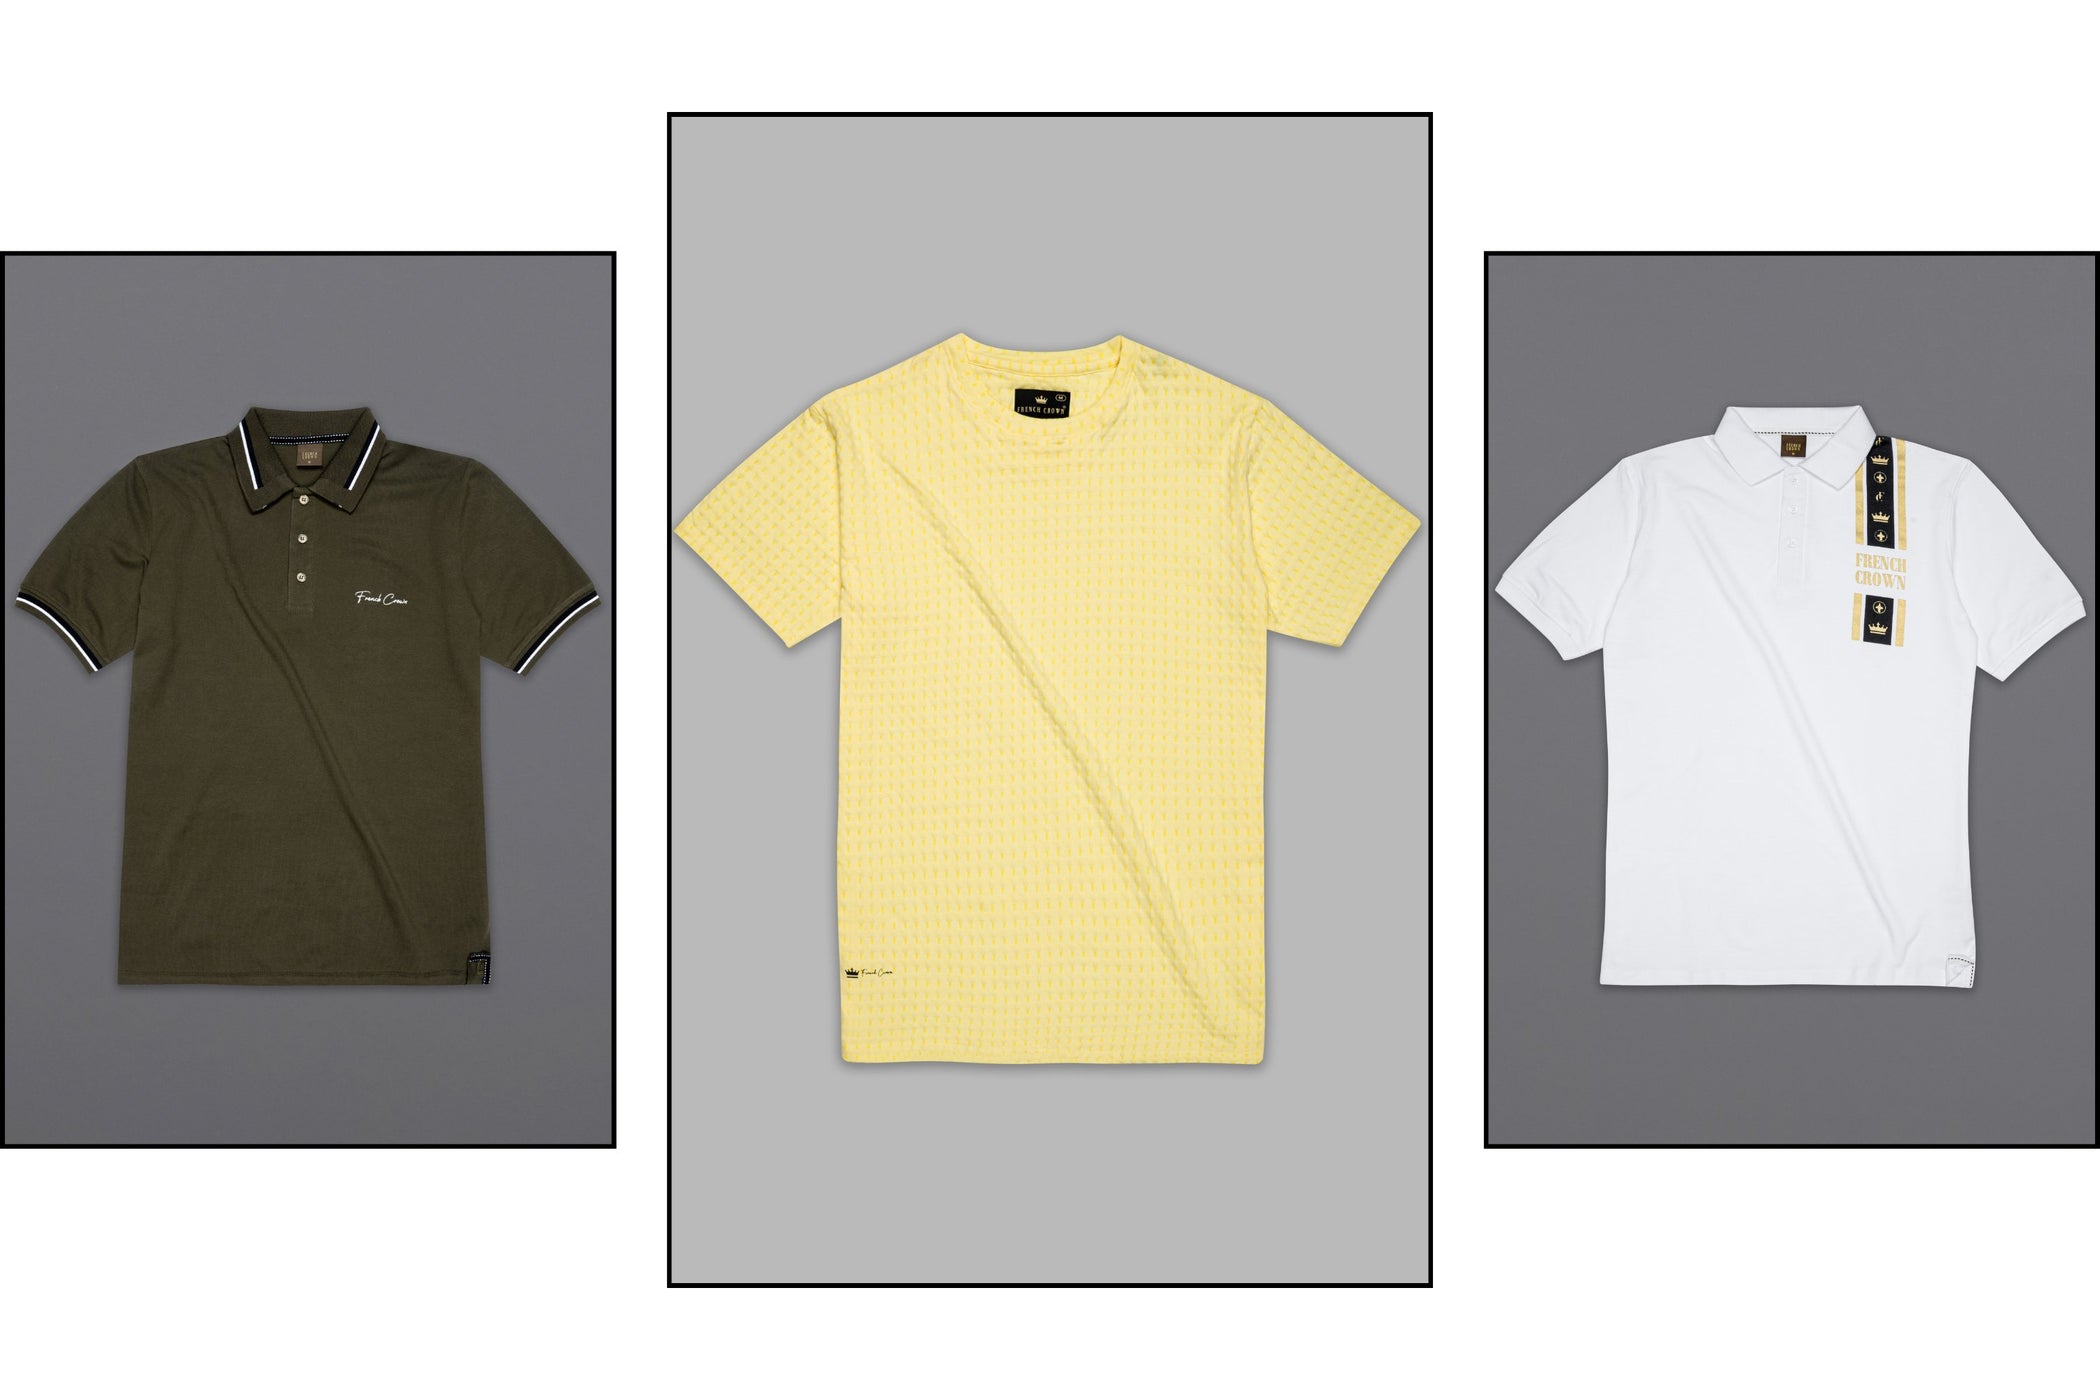 New Tshirts / Polos / Sweatshirts